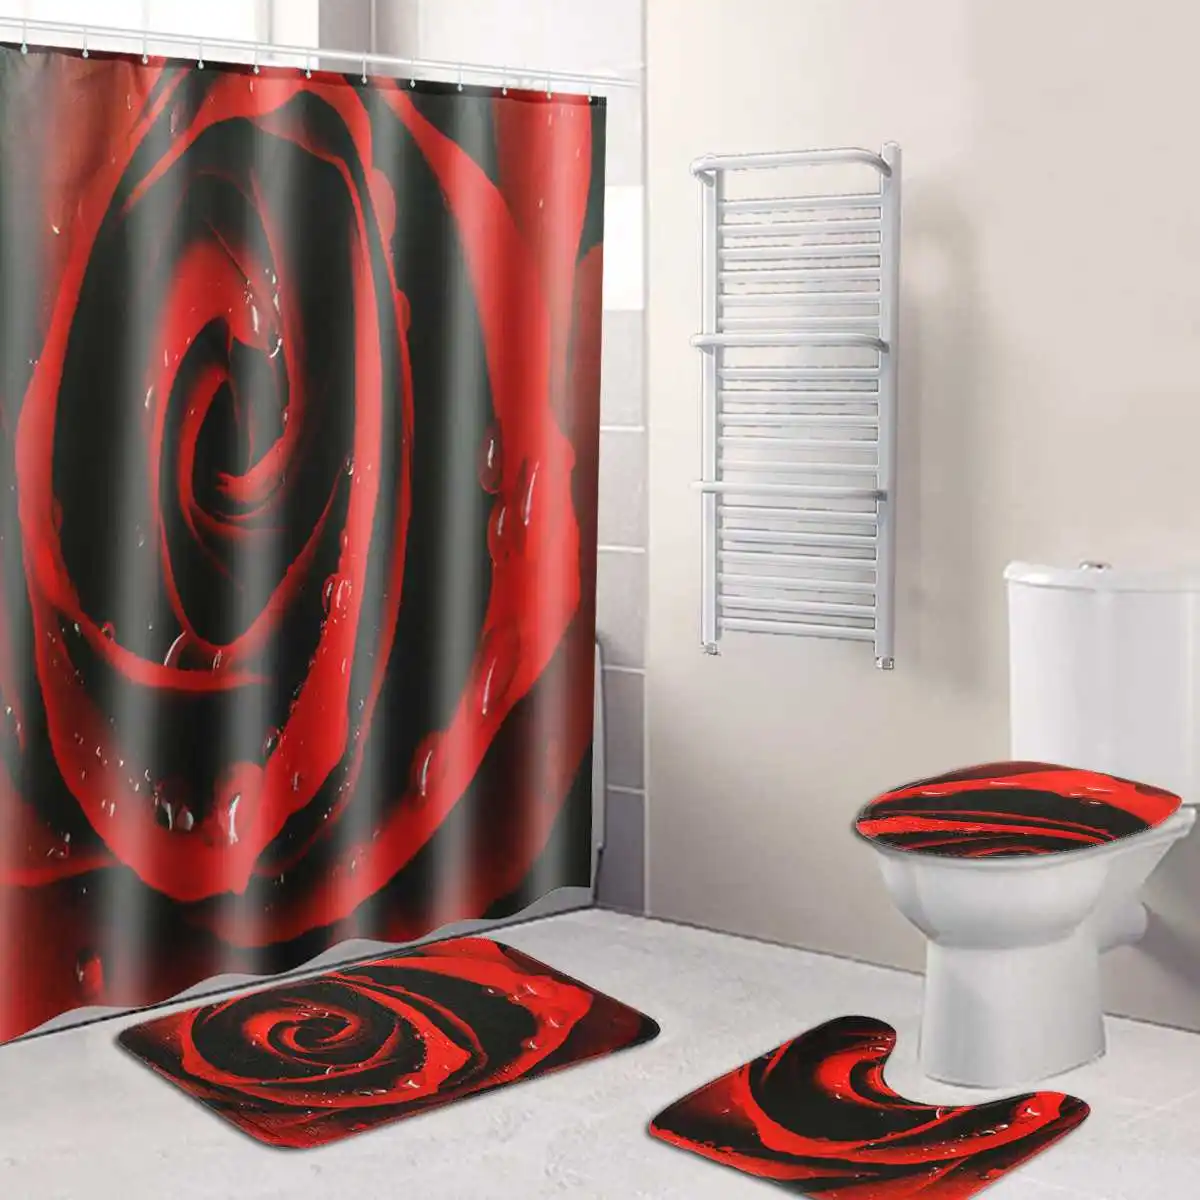 3 шт. комплект коврик для туалета Красная роза цветок полиэстер водонепроницаемые аксессуары занавеска для ванной комнаты ткань ванна впитывает воду пыль